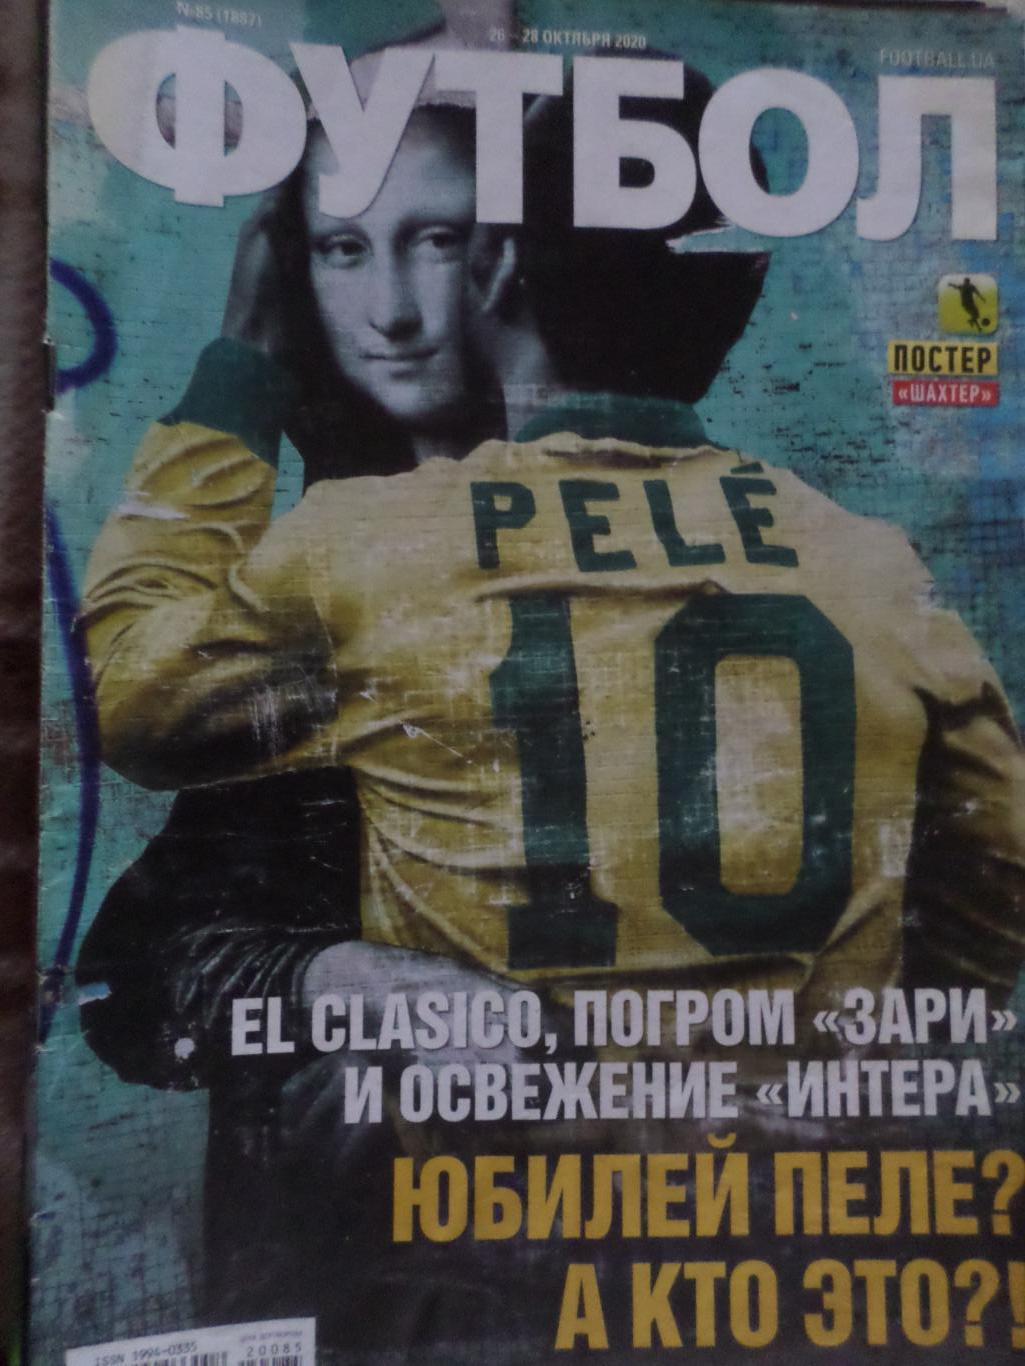 Еженедельник Футбол, Киев, № 85 2020 год